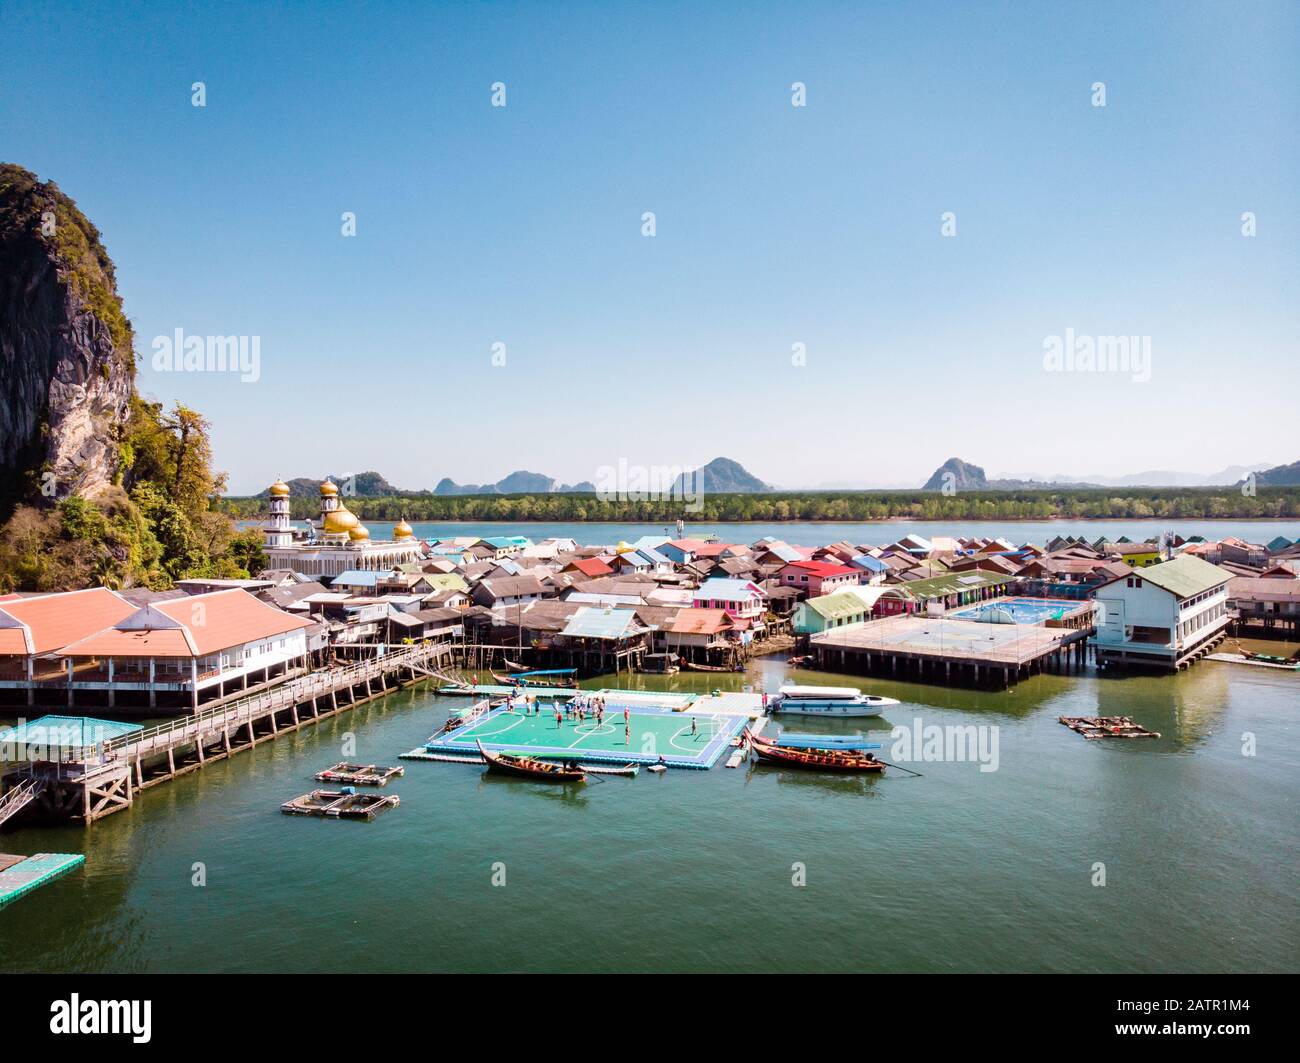 Schöne Landschaft Moschee Meer und Himmel im Sommer auf der Insel Punyi, Ko Panyi oder Koh Panyee, moslemische Fischer Dorf Sehenswürdigkeiten Reisen mit dem Boot Stockfoto